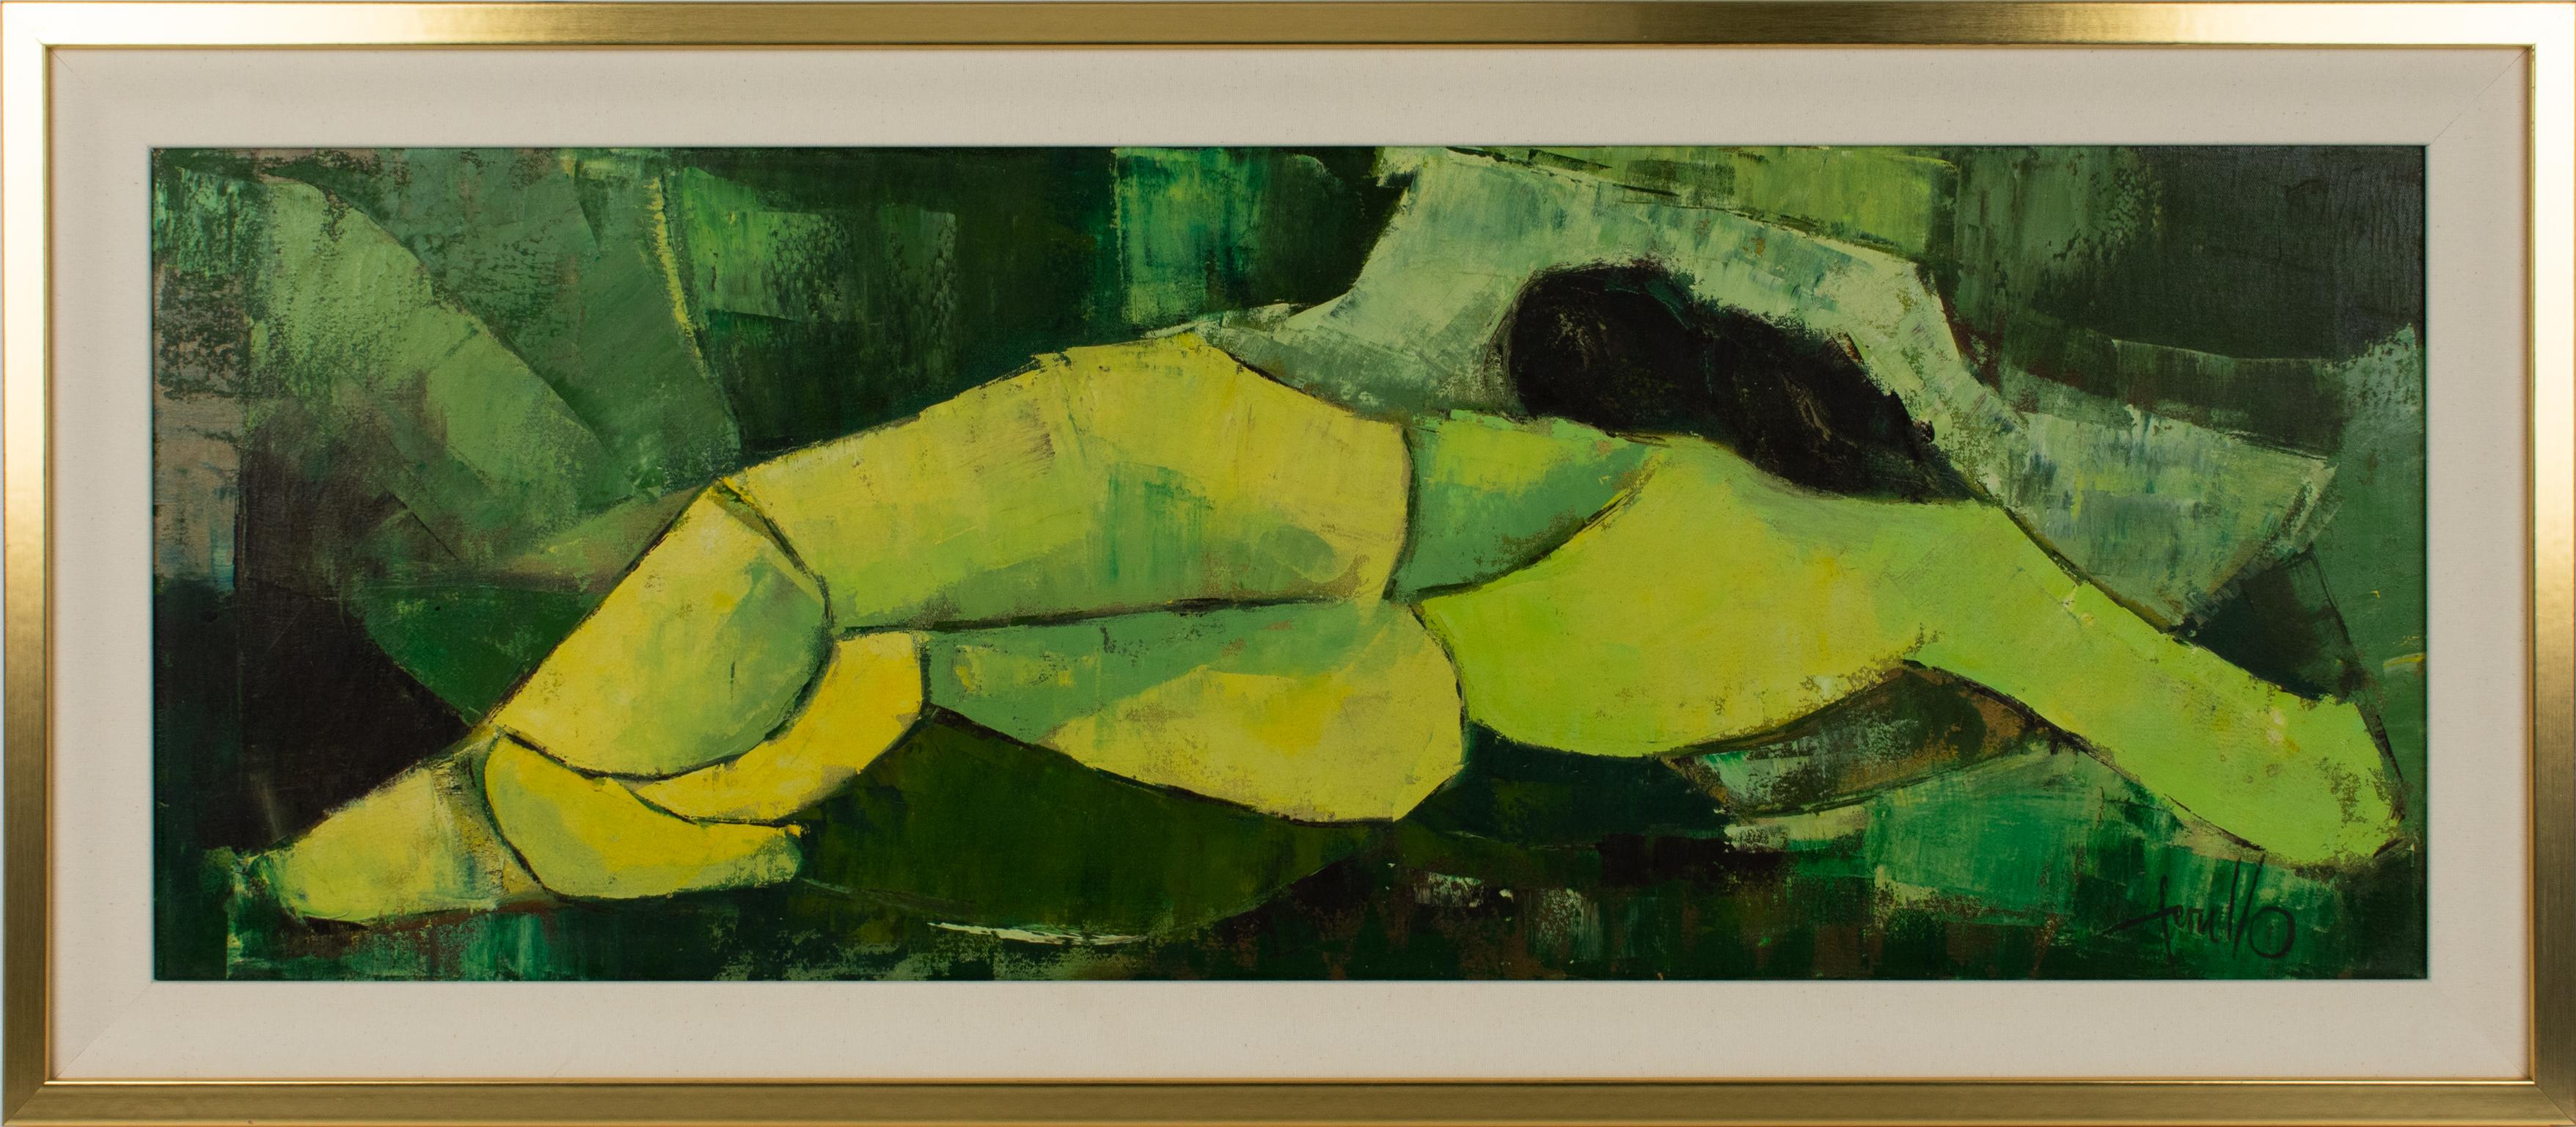 Edith E. Ferullo Nude Painting - Mid Century Abstract Nude Oil on Canvas Painting by Edith Ferullo